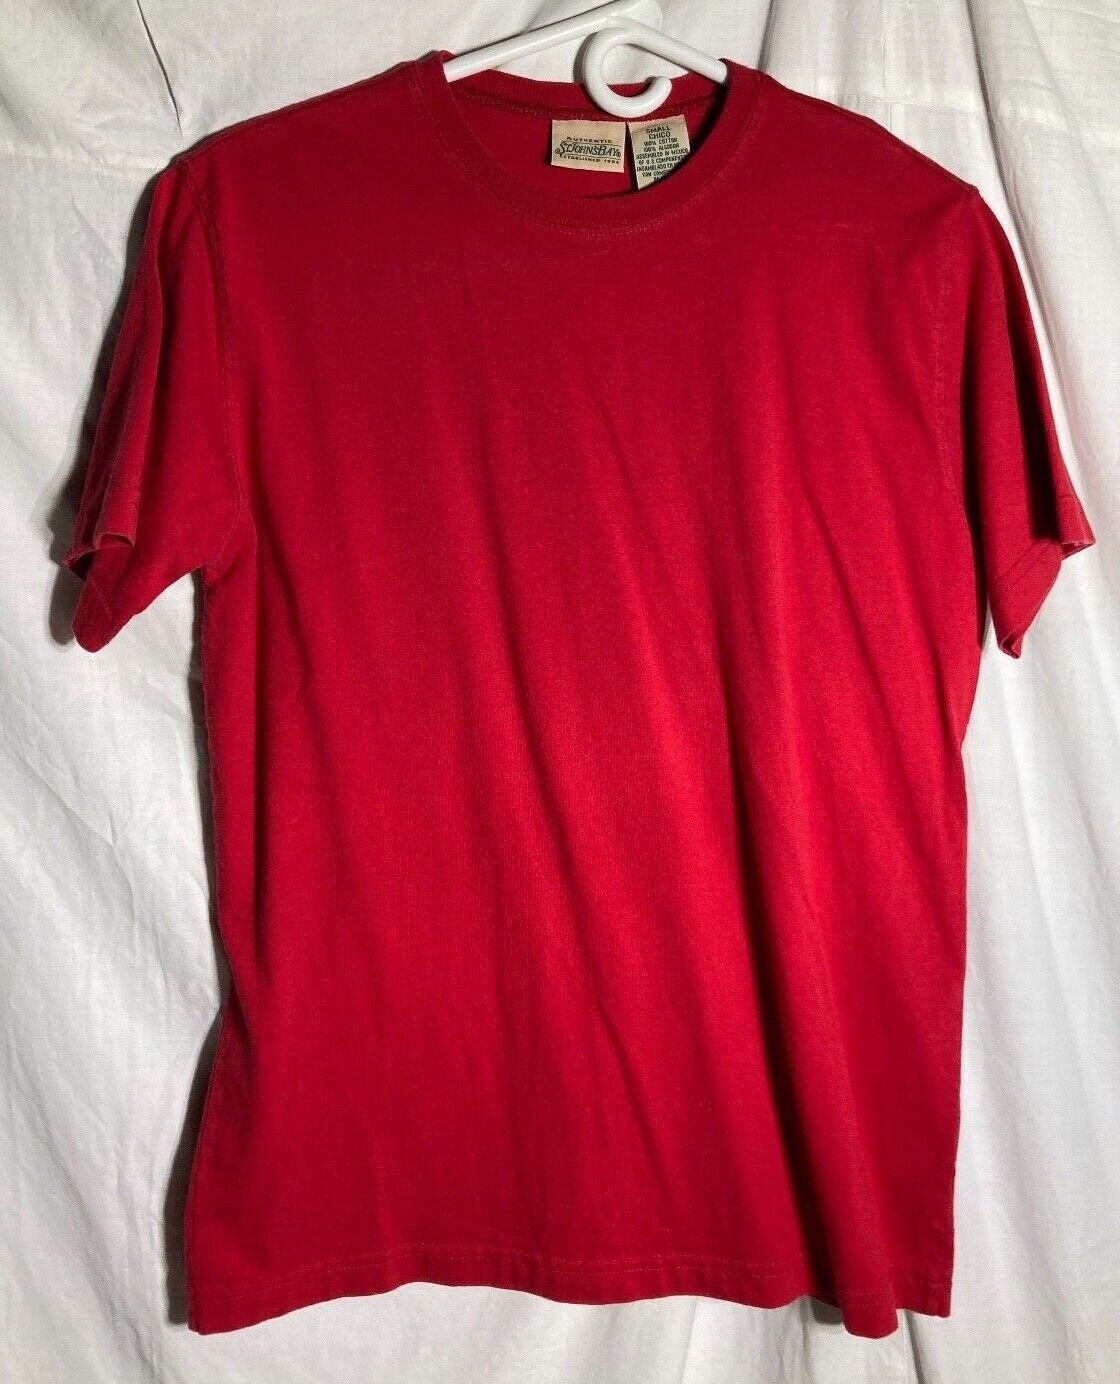 Vtg. St. John's Bay 100% Cotton Short Sleeve Crew Neck T-Shirt Women's Red Small